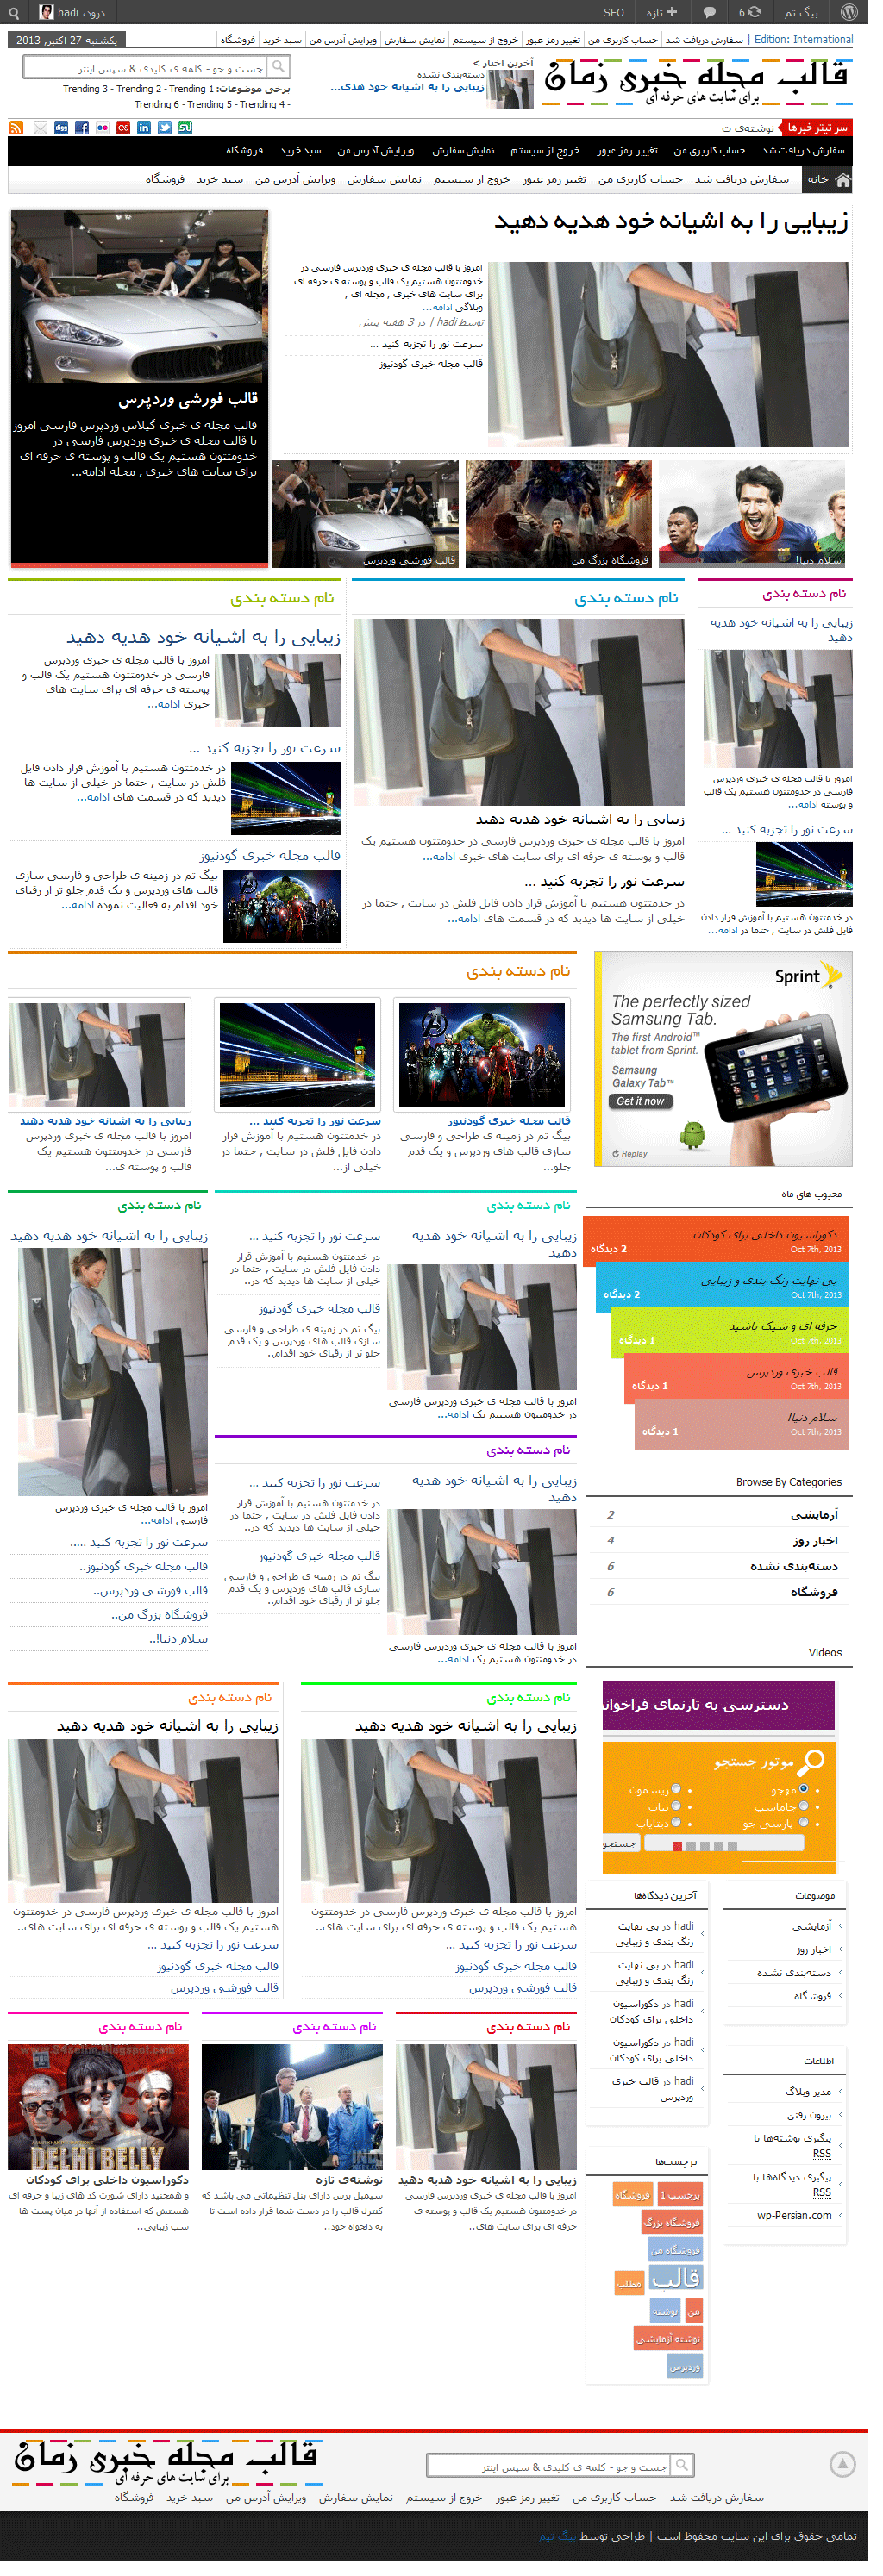 قالب مجله ی خبری فارسی وردپرس